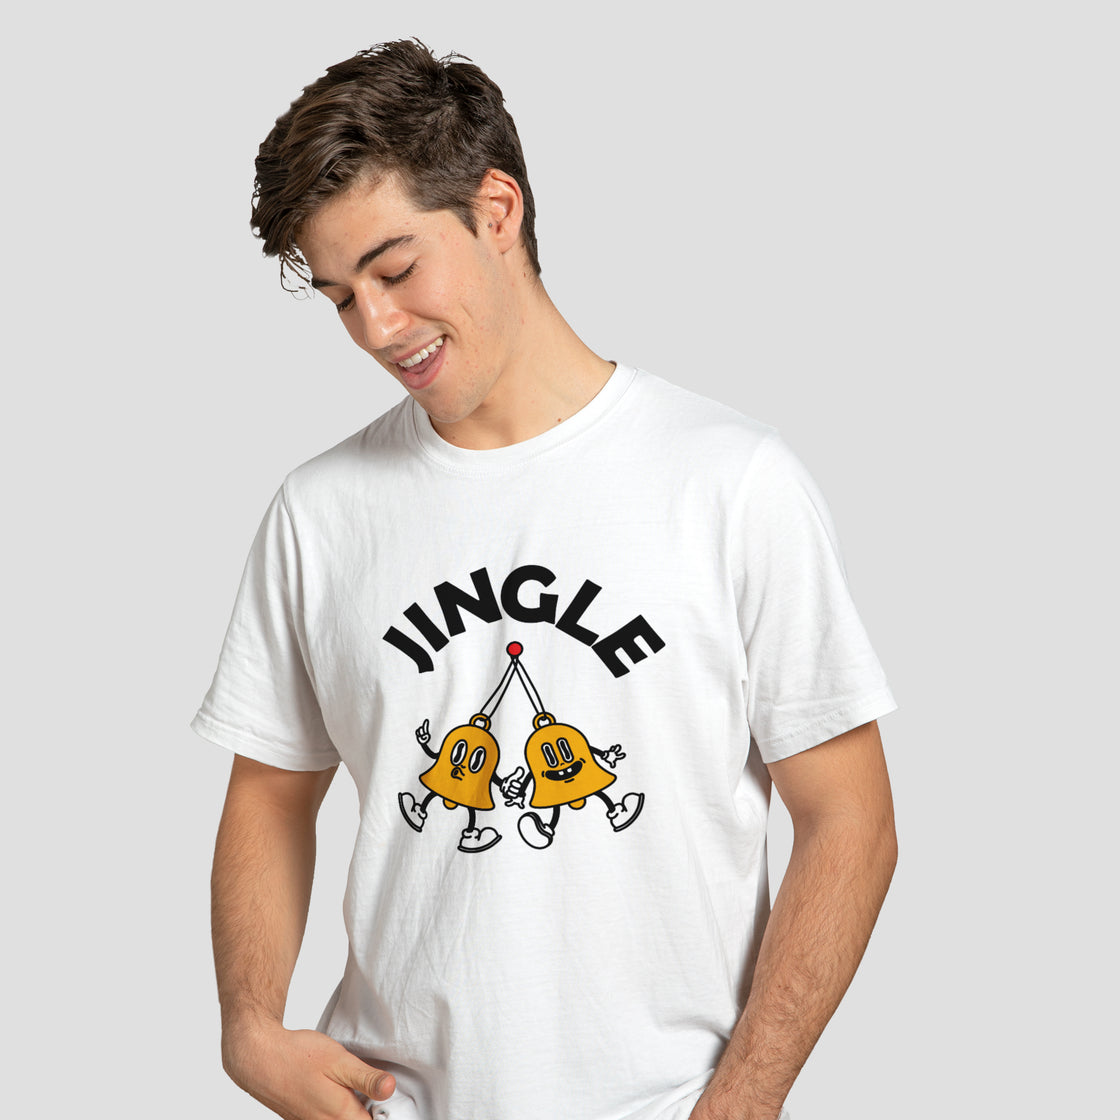 Jingle Bells - T-Shirt - Custom Gifts 